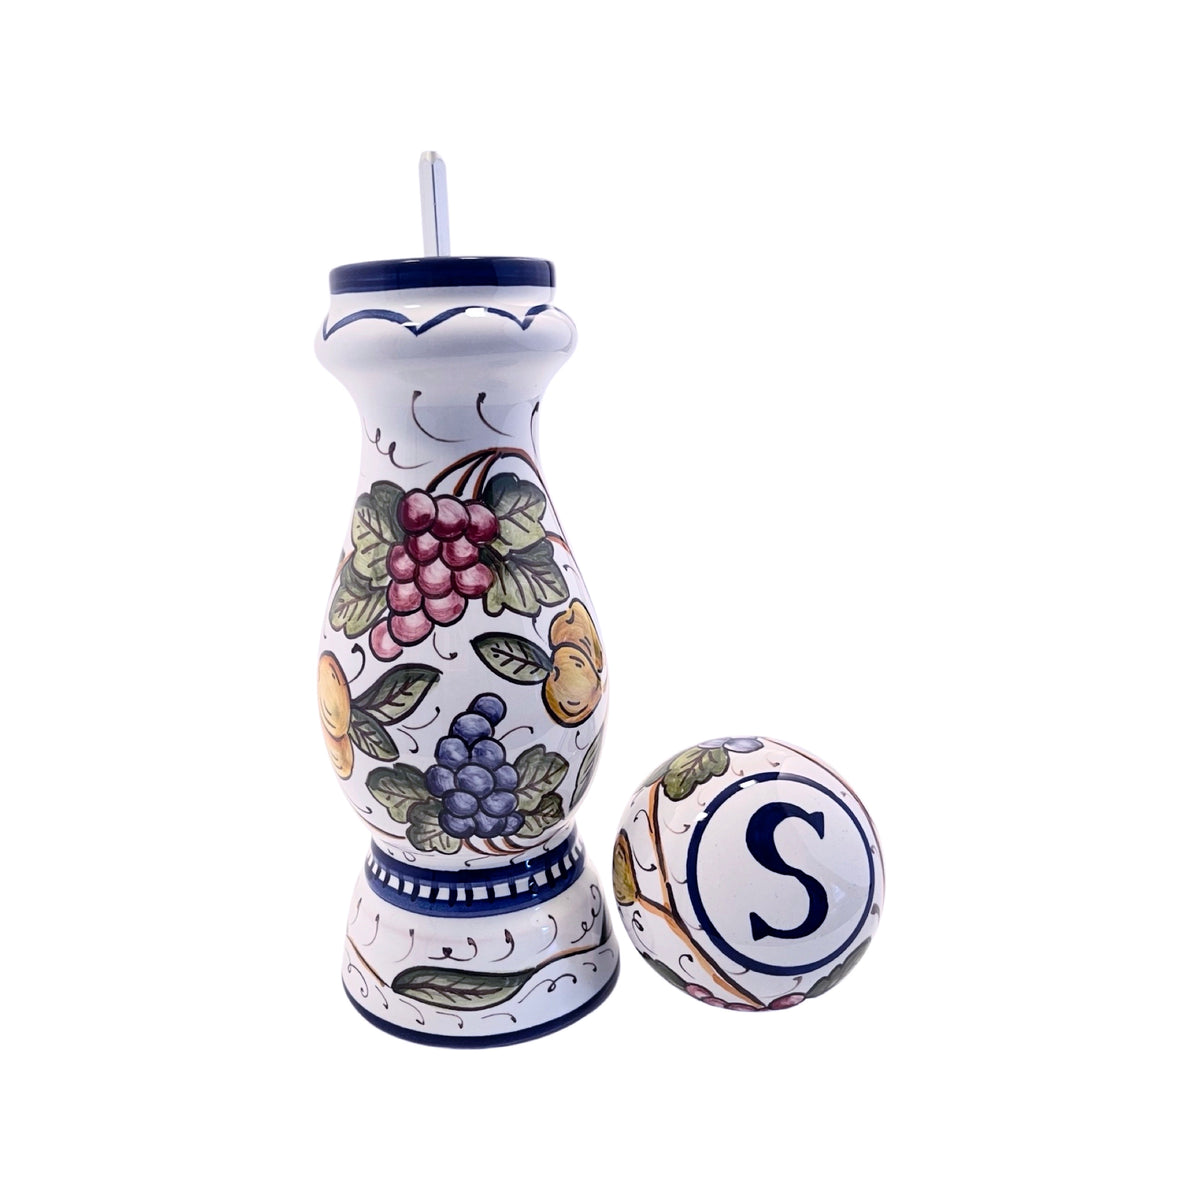 Buy Grinder Salt & Pepper Set - Siena at Biordi Art Imports